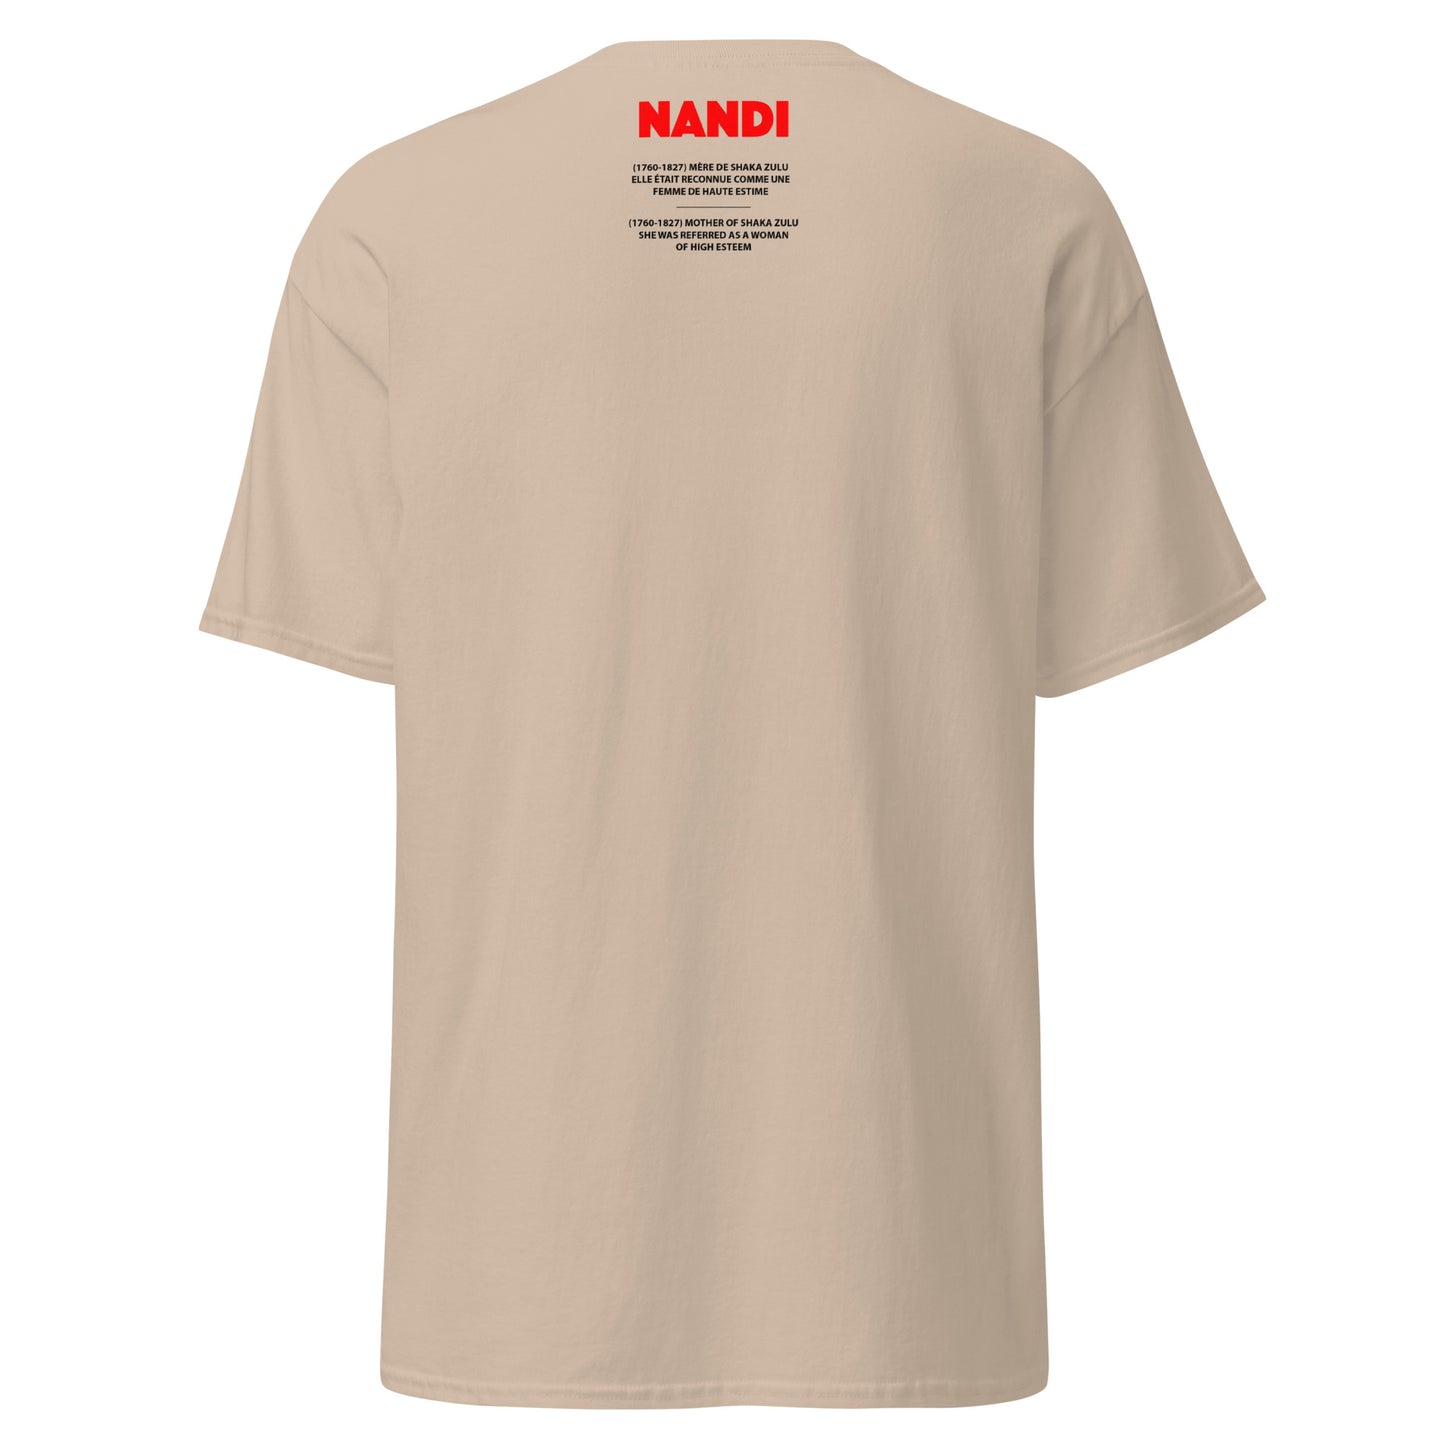 NANDI (T-shirt)